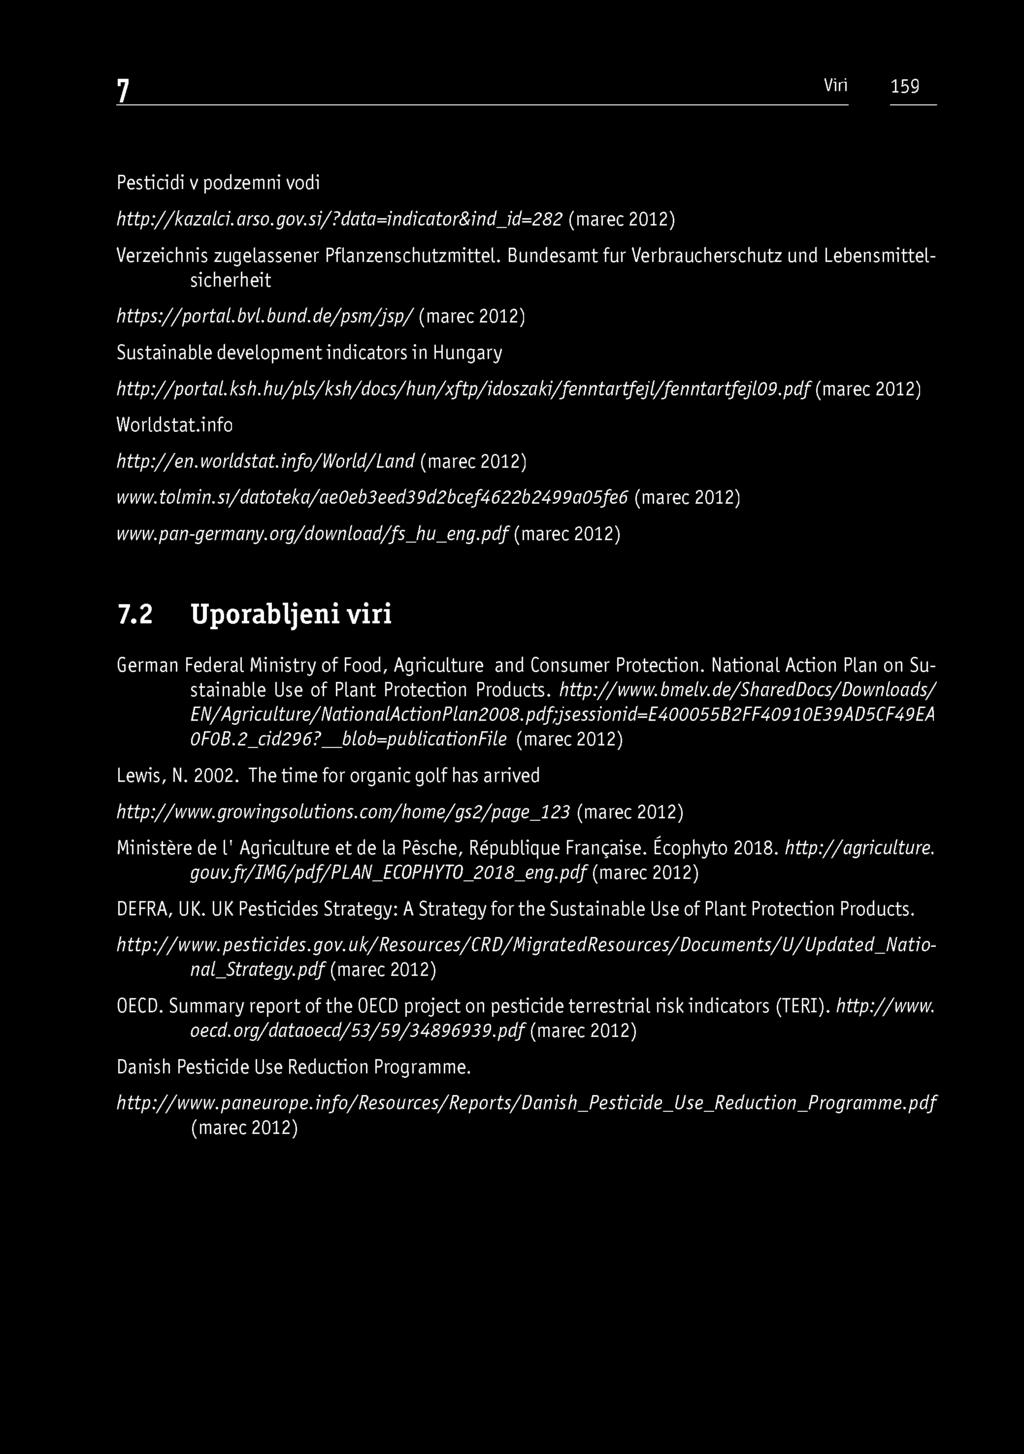 hu/pls/ksh/docs/hun/xftp/idoszaki/fenntartfejl/fenntartfejl09.pdf (marec 2012) Worldstat.info http://en.worldstat.info/world/land (marec 2012) www.tolmin.